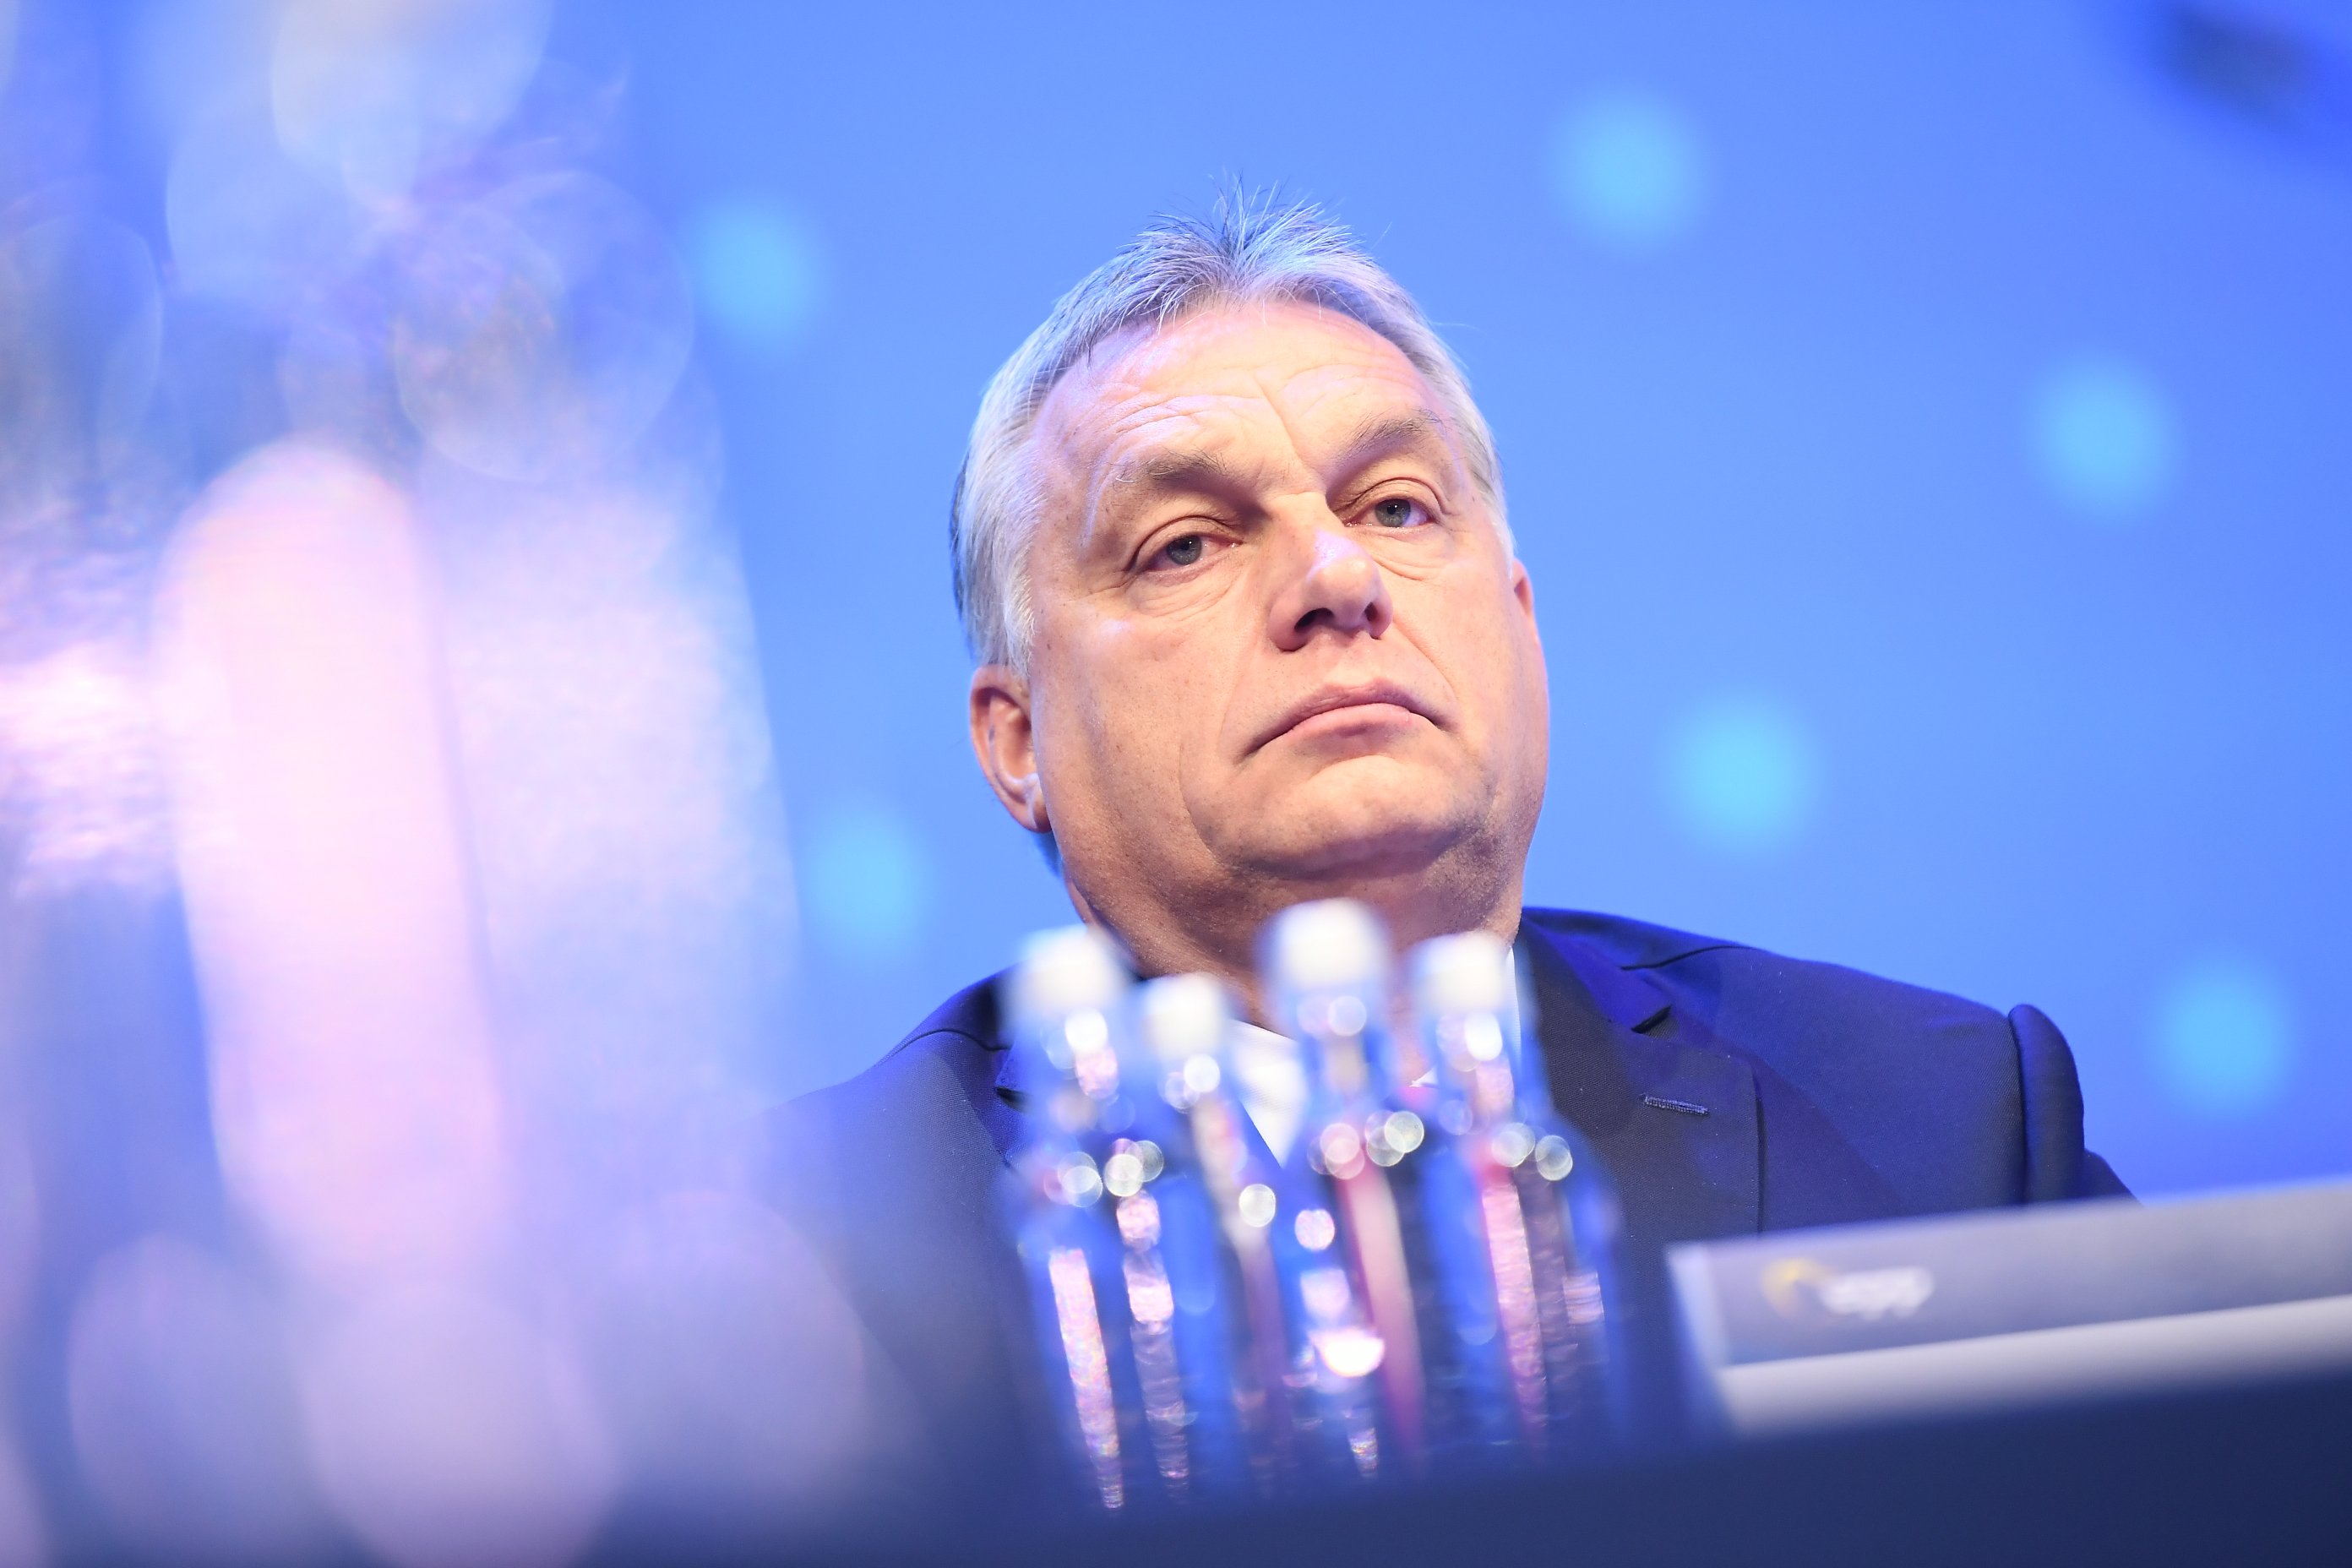 Orbán s’aprofita del coronavirus per convertir-se en dictador d’Hongria